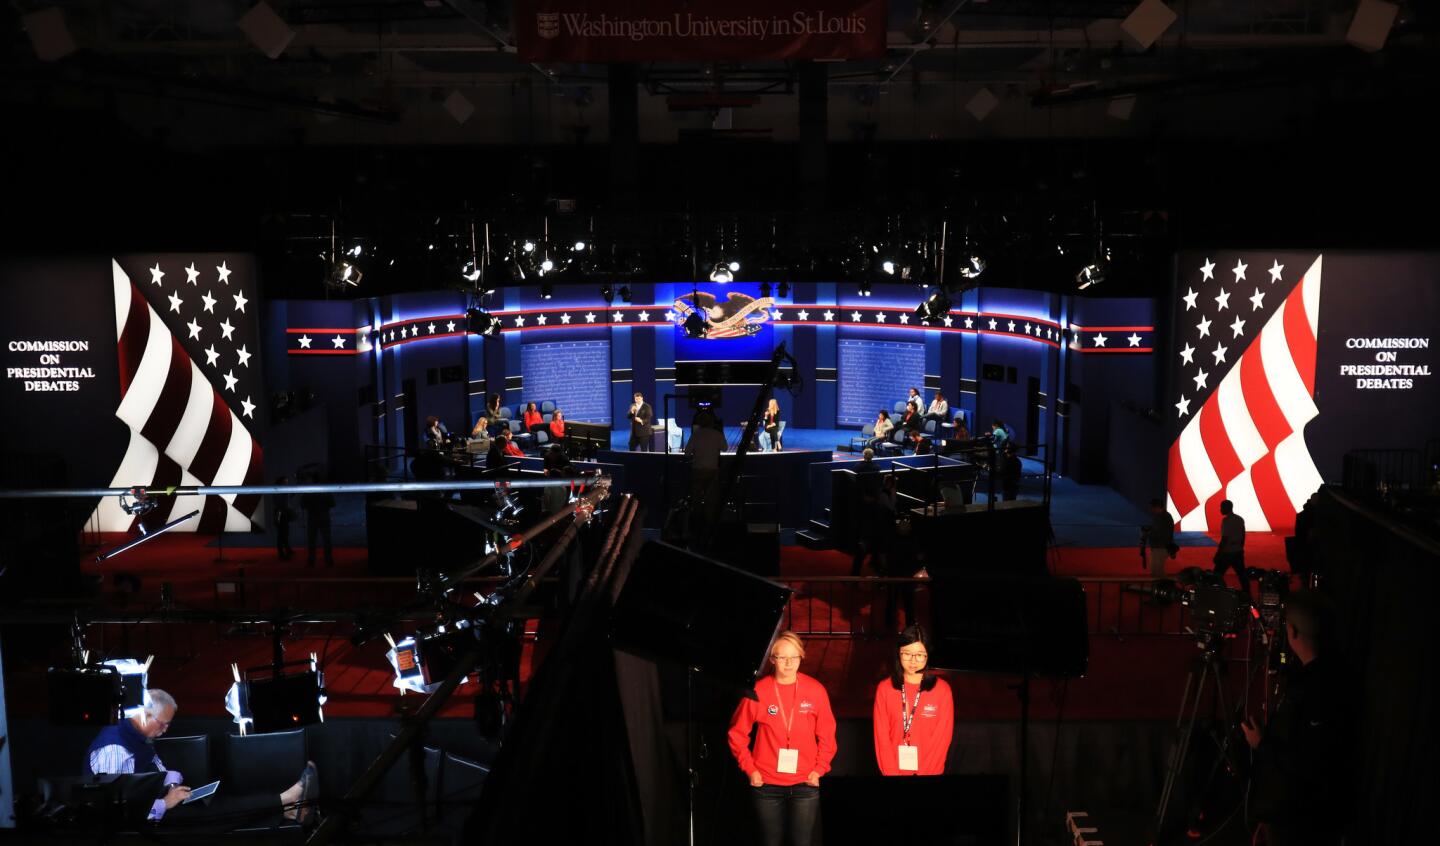 Presidential debate in St. Louis